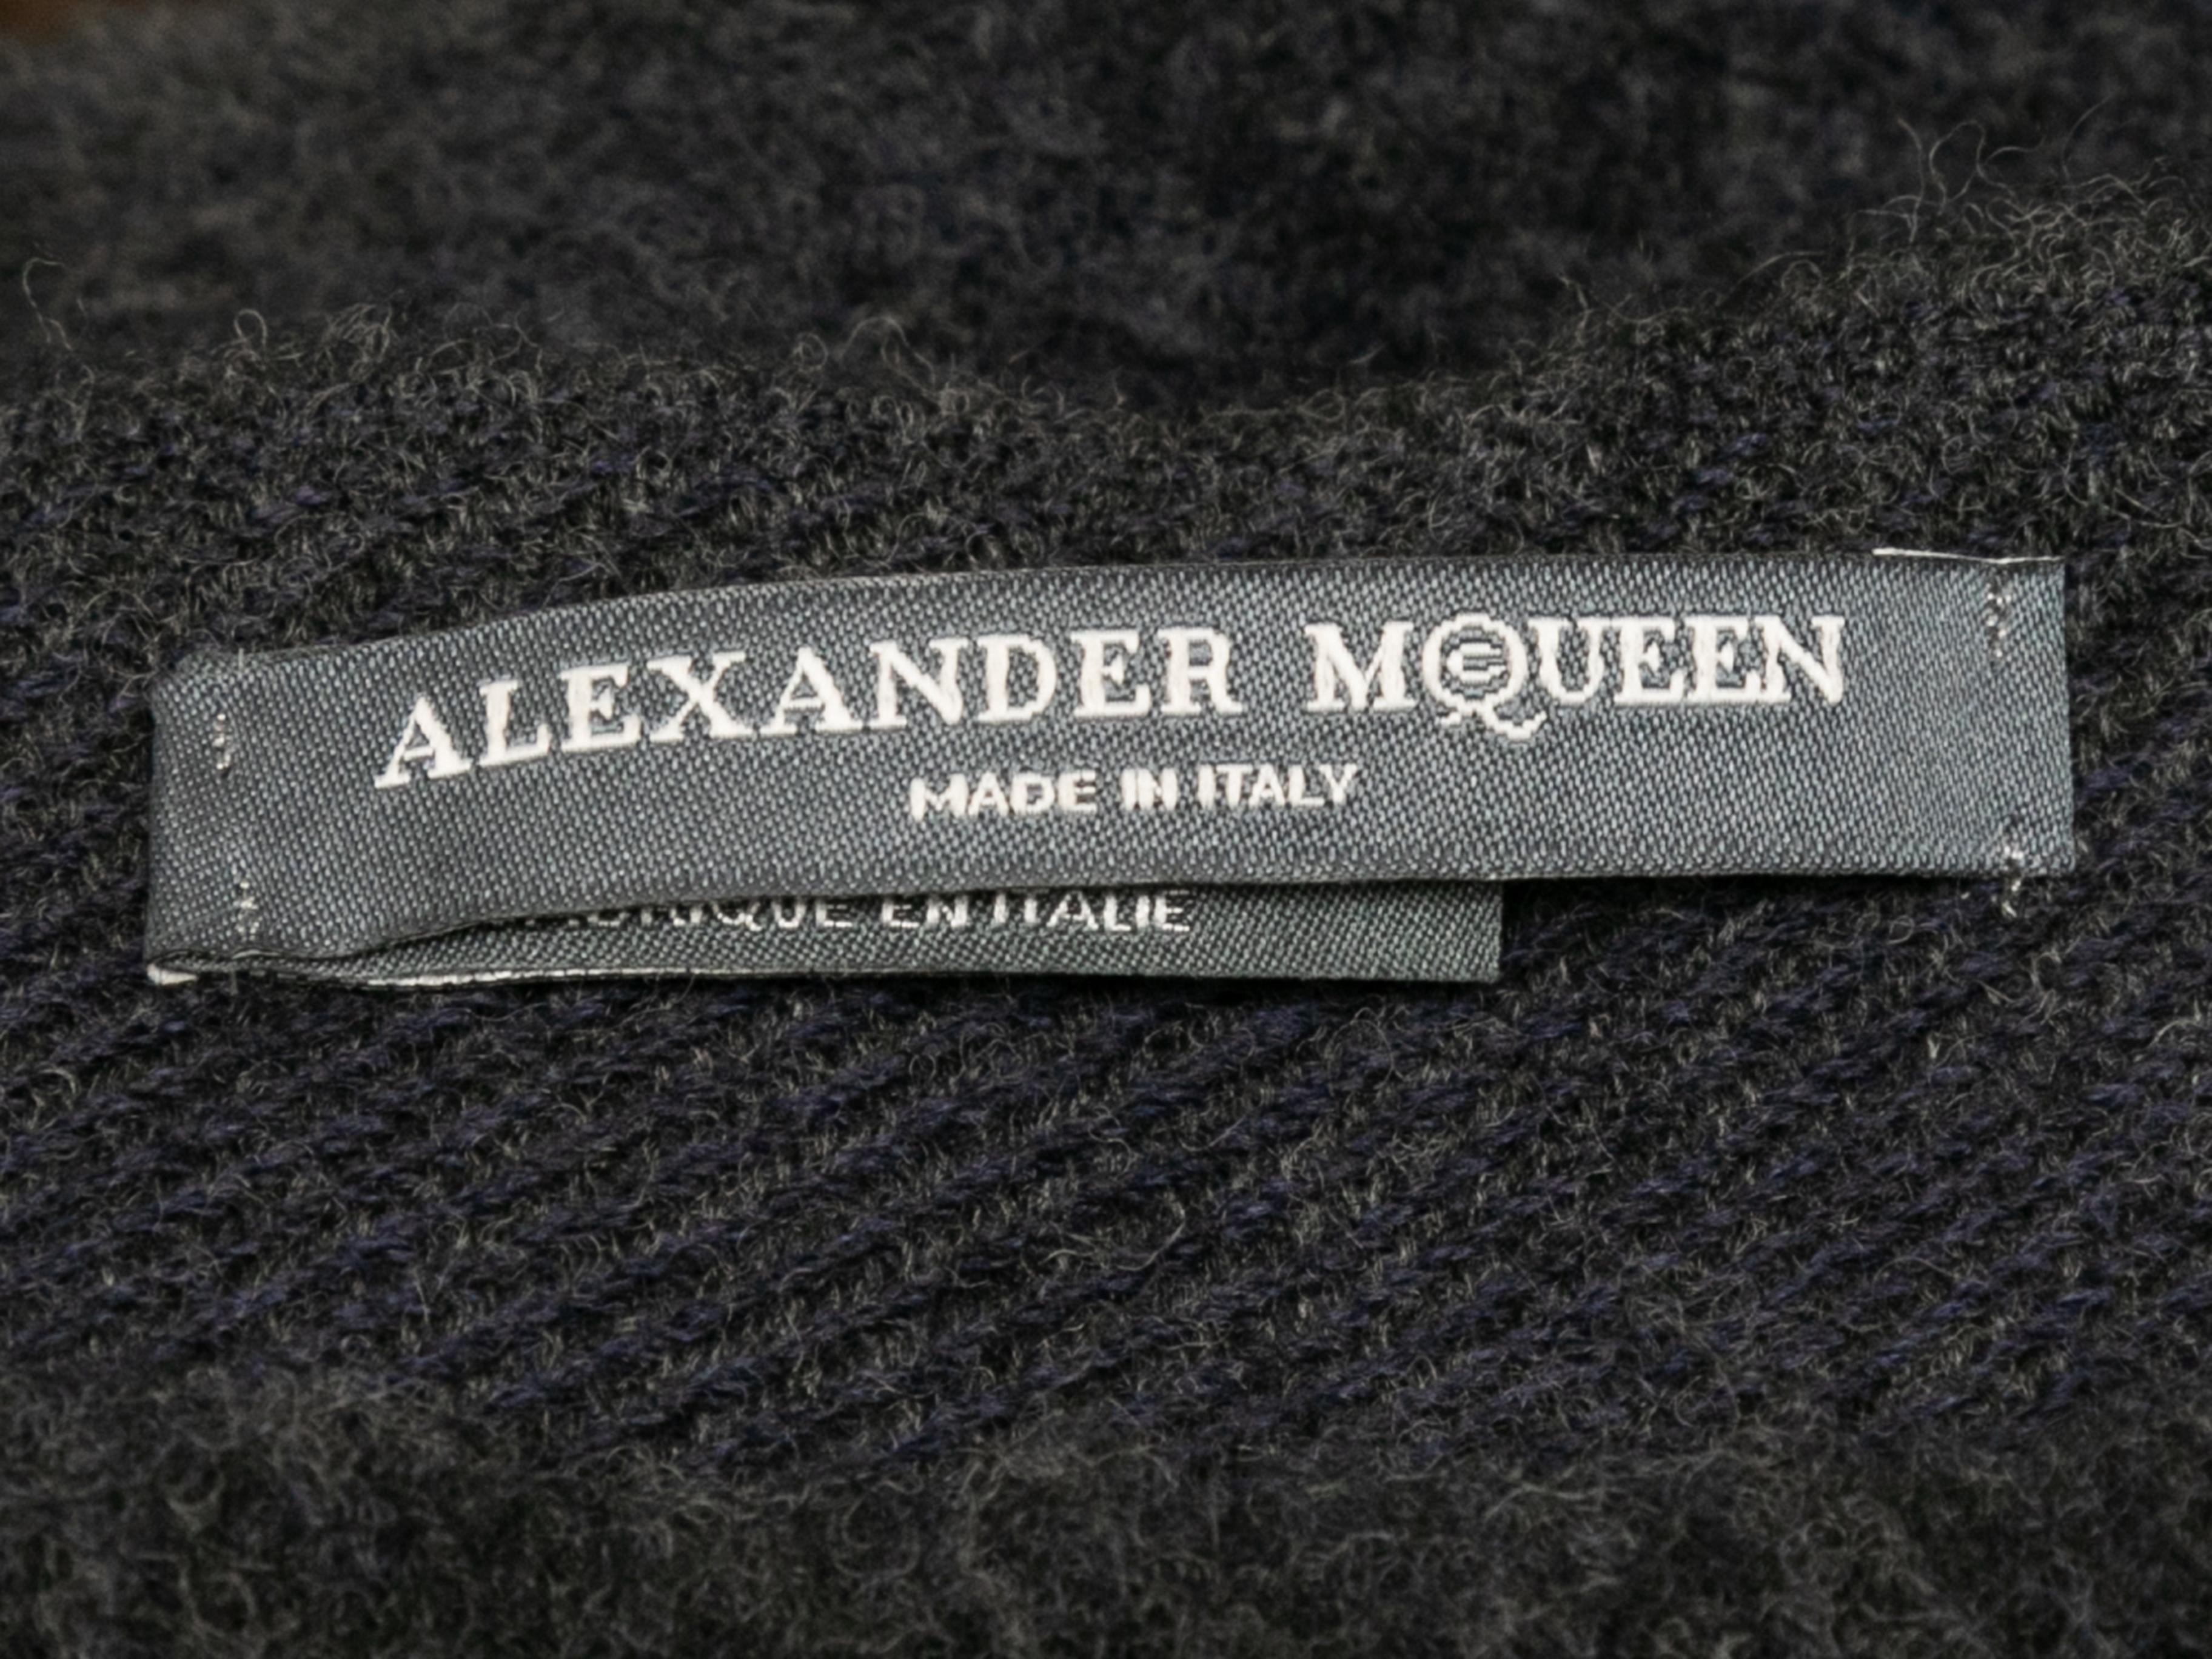 Vintage-Schal mit schwarzem und weißem Totenkopfmuster von Alexander McQueen. 54